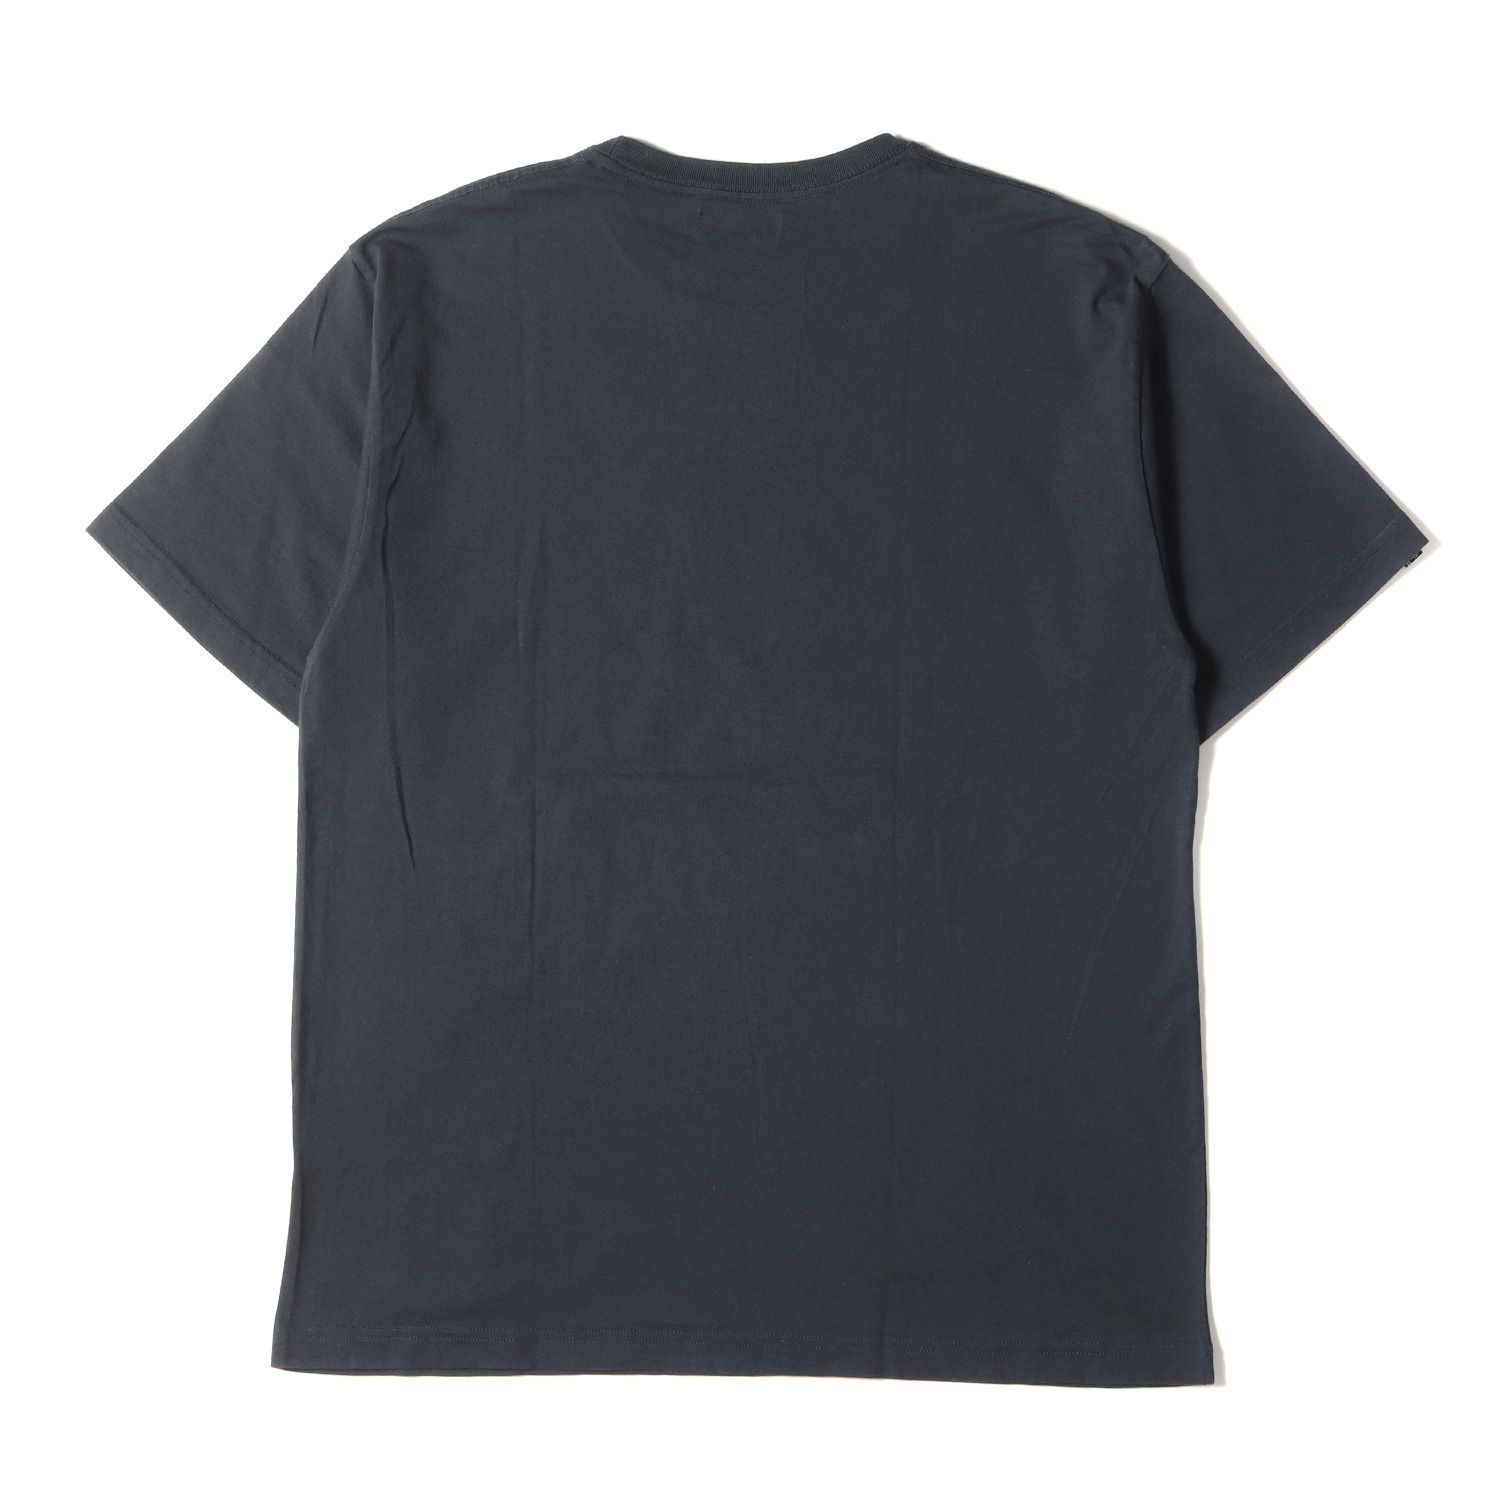 美品 NEIGHBORHOOD ネイバーフッド Tシャツ サイズ:XL SVG ブランドロゴ 半袖 クルーネック チャコール トップス カットソー  ストリート カジュアル ブランド